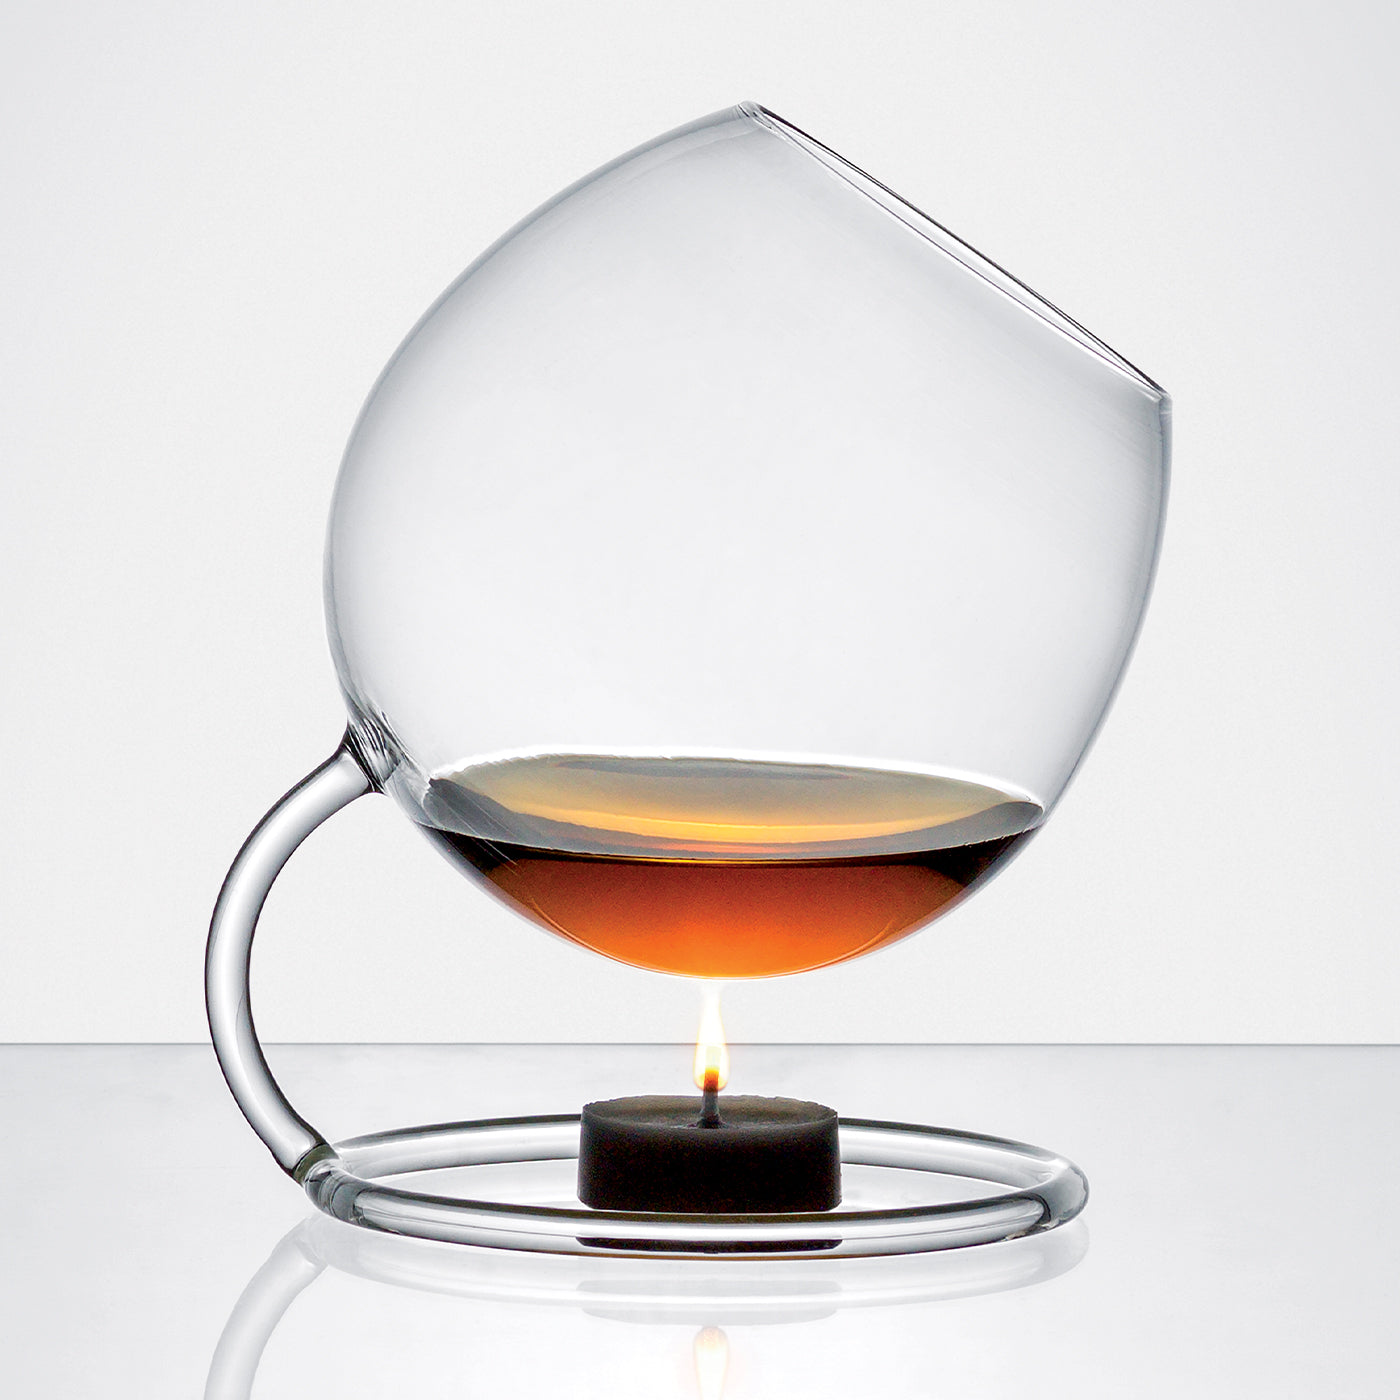 Sailor Spirit Glass by Esposito, Piezzo, Paretti - Alternative view 1